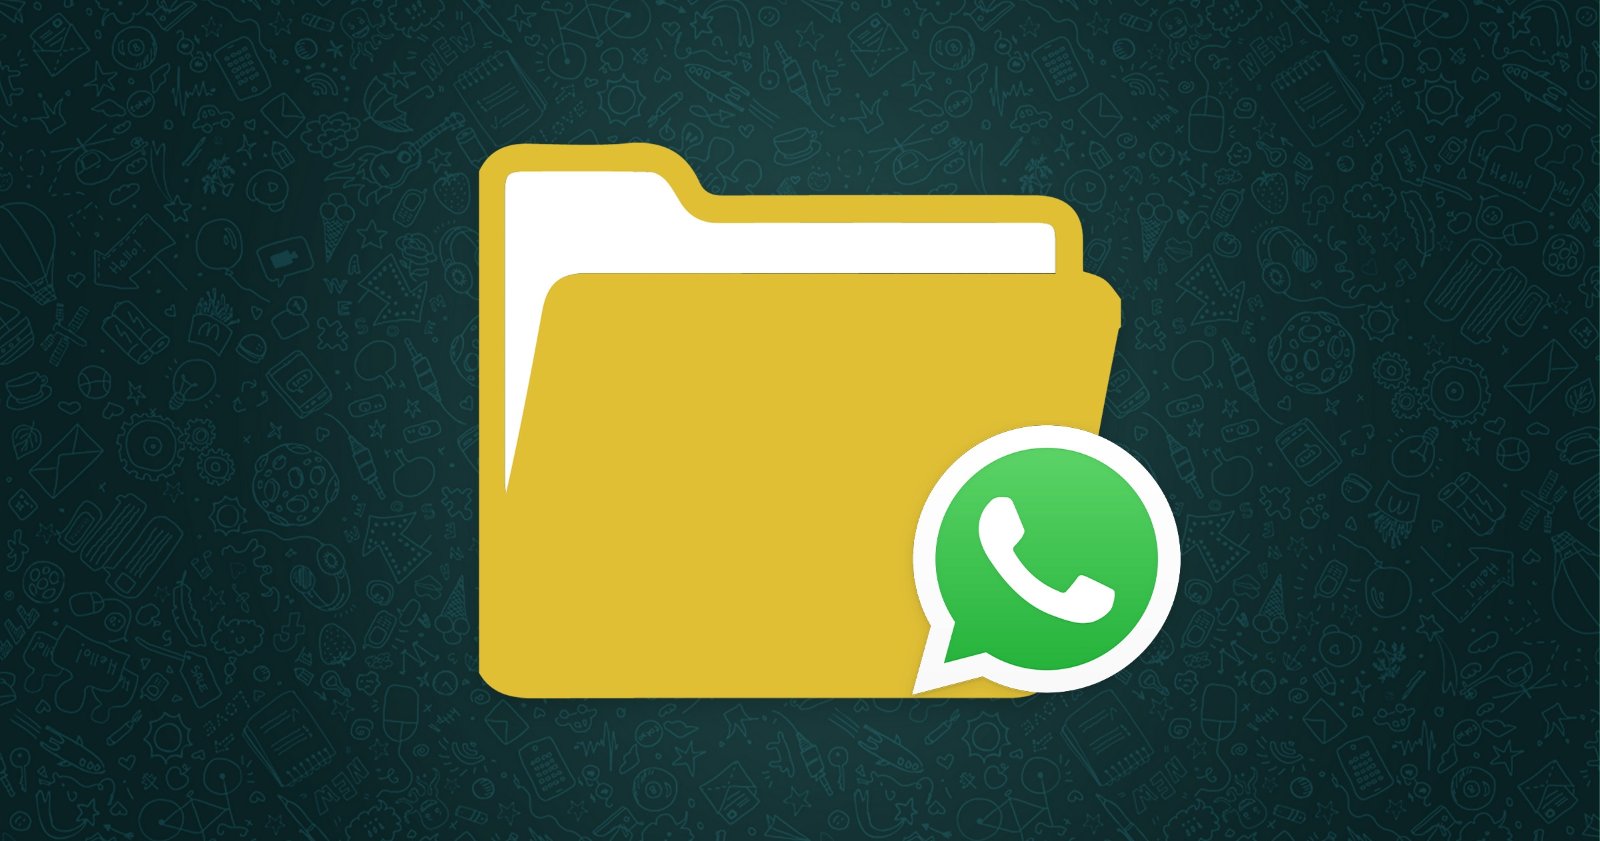 asi puedes enviar archivos de gran tamano en whatsapp laverdaddemonagas.com carpeta de descargas de whatsapp